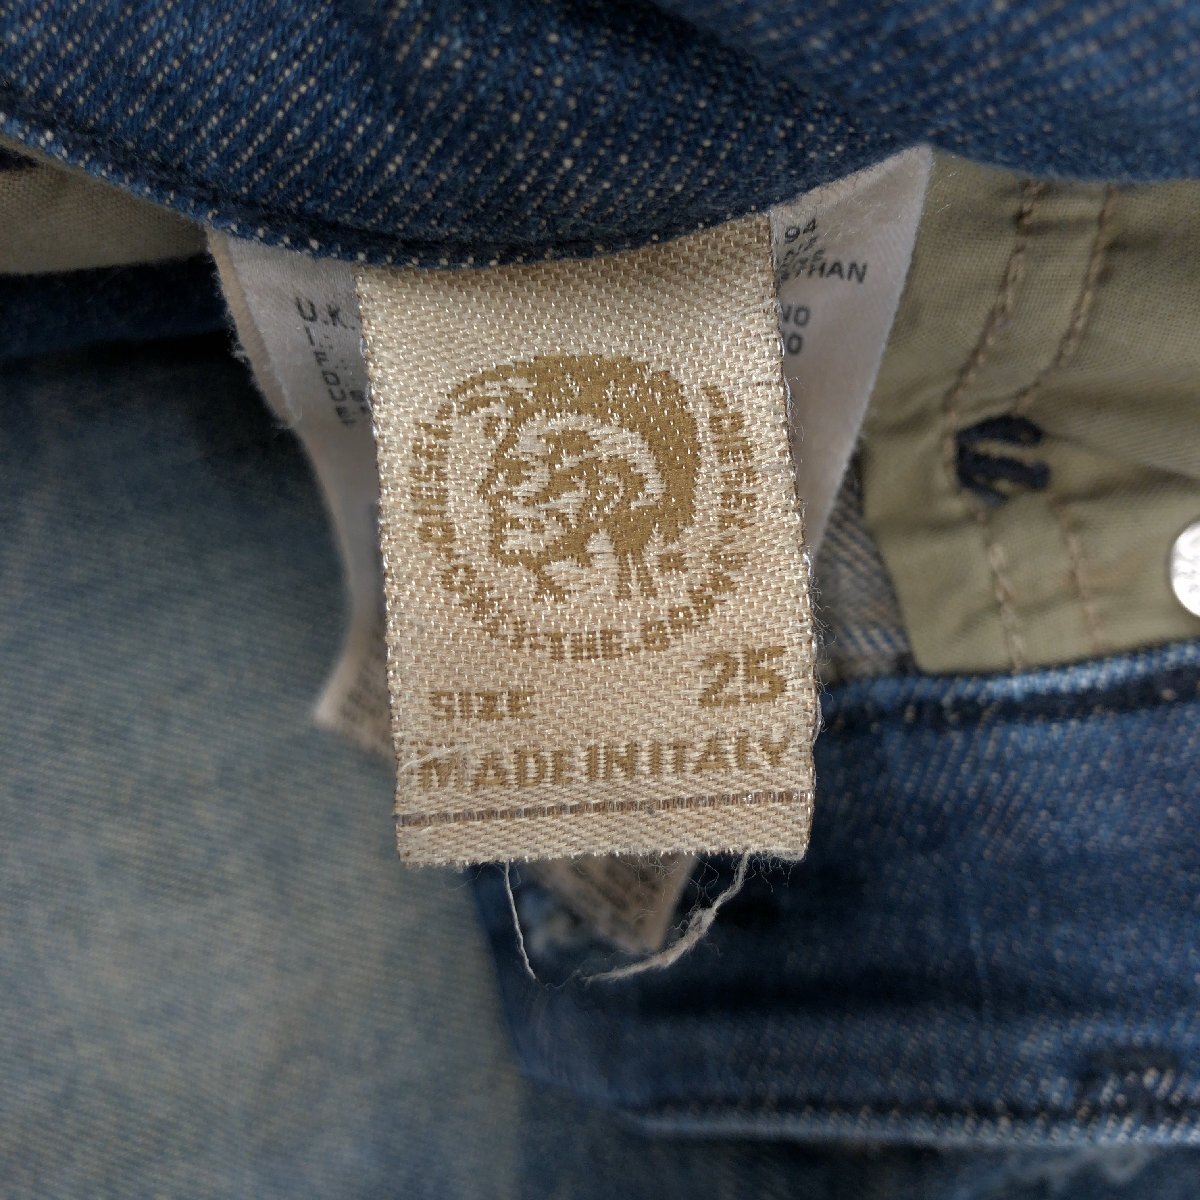  сделано в Италии DIESEL дизель Getlegg повреждение обработка стрейч Rollei z тонкий обтягивающие джинсы брюки 25 w72 темно-синий индиго джинсы 